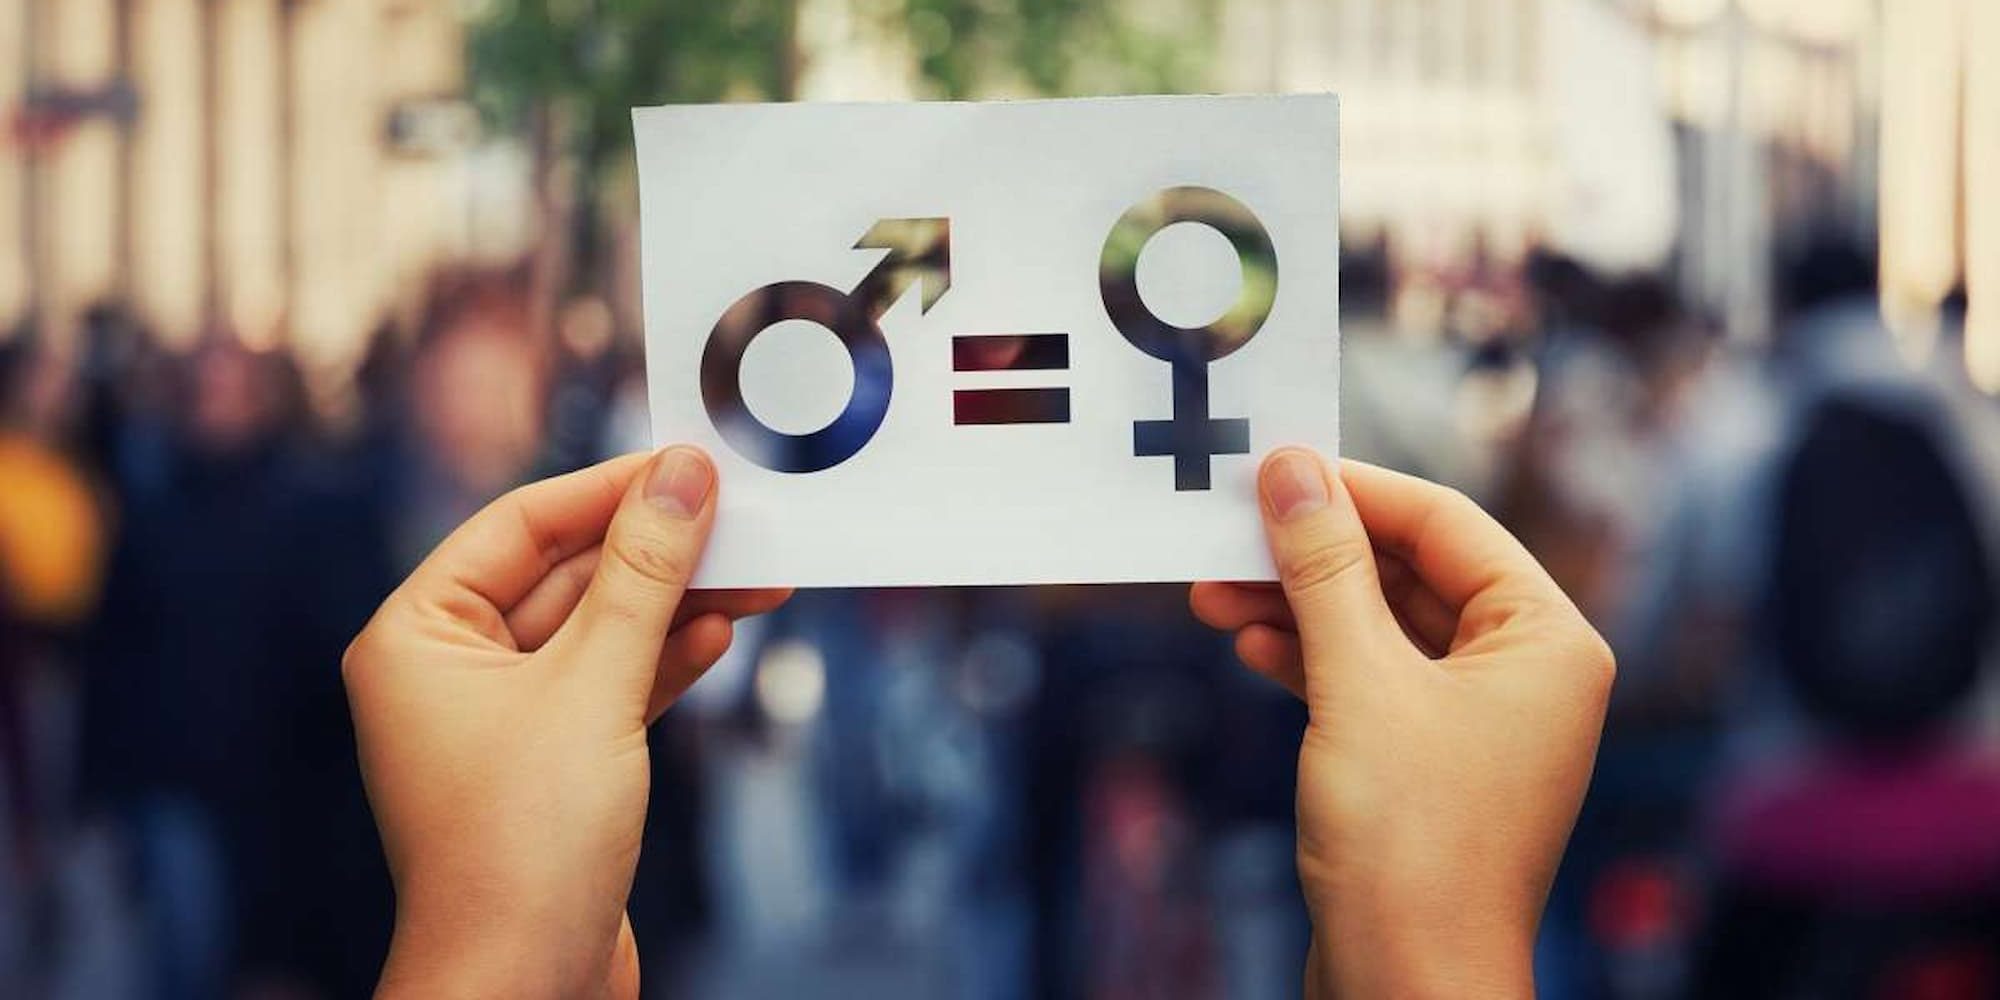 Θα χρειαστούν σχεδόν 300 χρόνια για να επιτευχθεί η ισότητα των φύλων